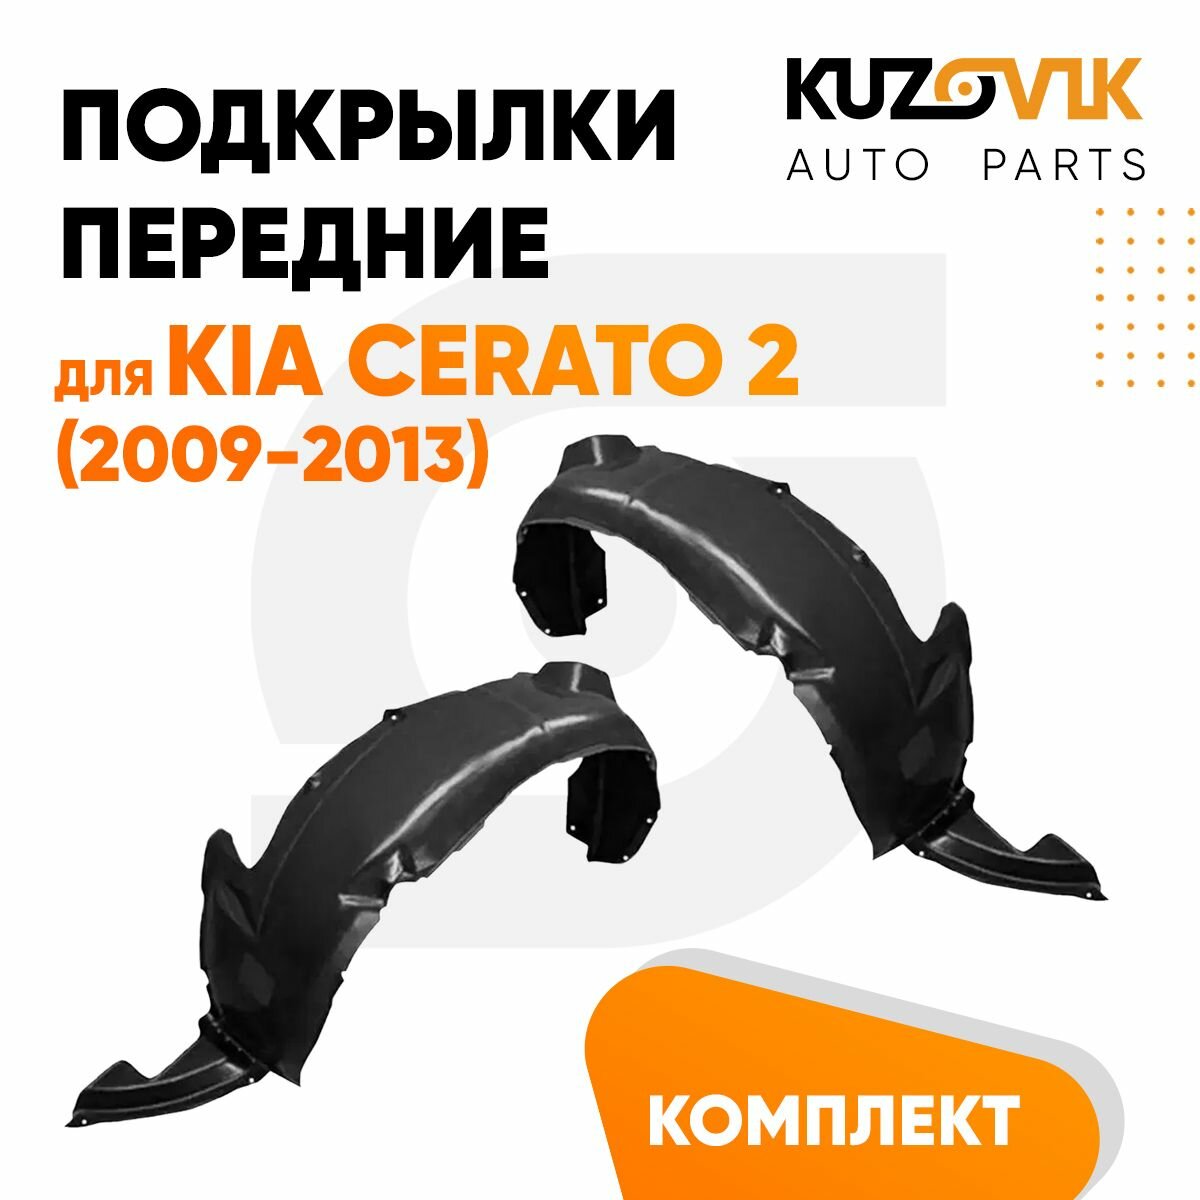 Подкрылки передние для Киа Церато Kia Cerato 2 (2009-2013) комплект левый + правый 2 штуки, локер, защита крыла